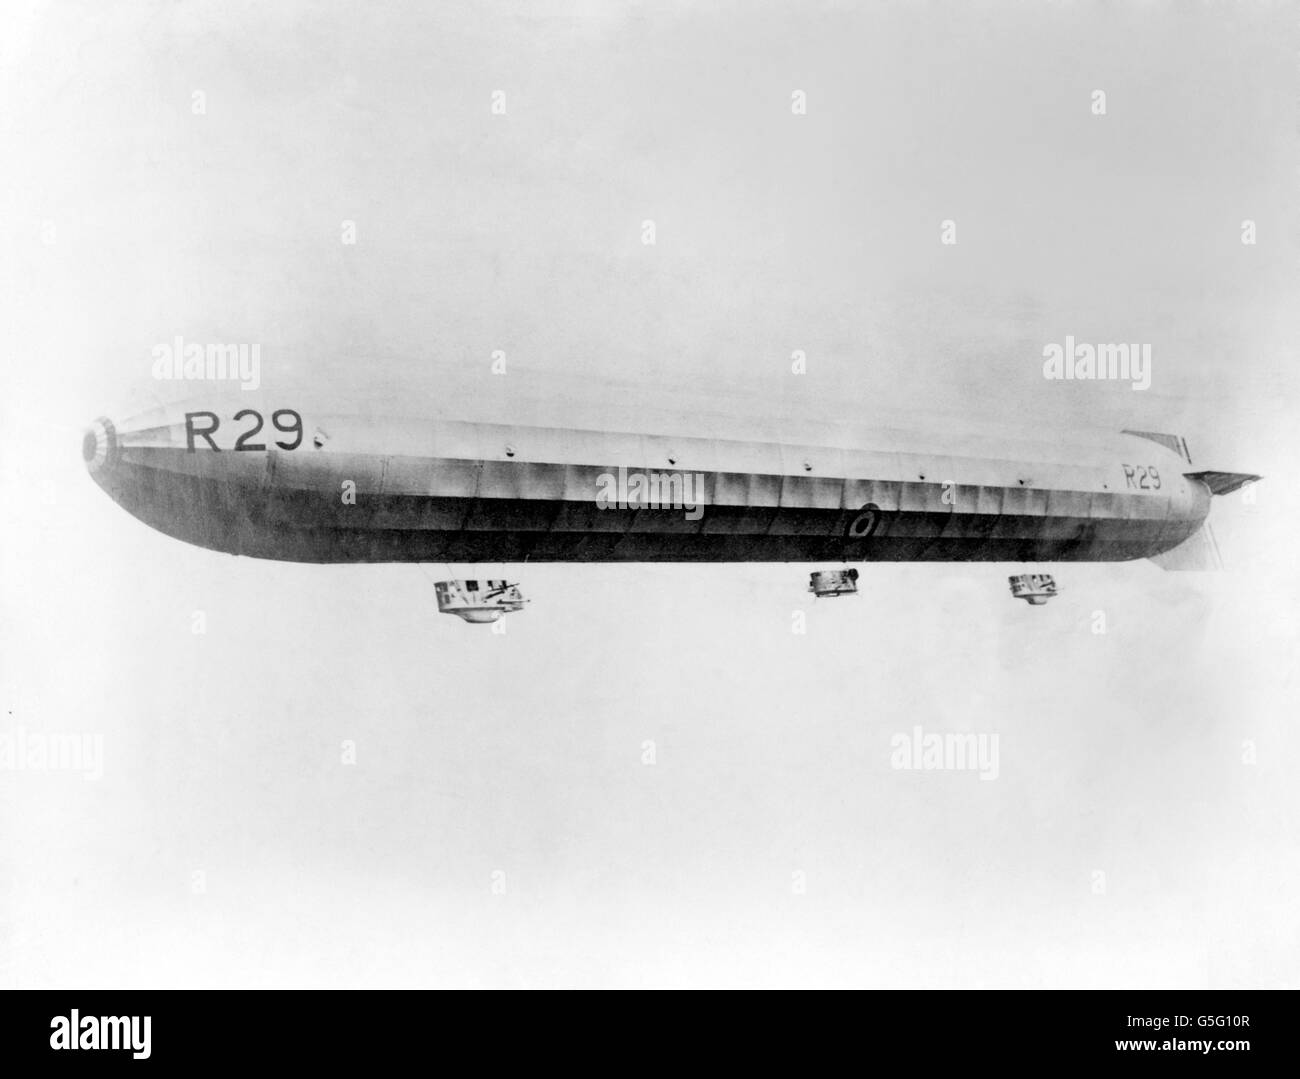 Erster Weltkrieg - Britisches Luftschiff - R29. Das Luftschiff R29 in der Luft im Jahr 1919. Stockfoto